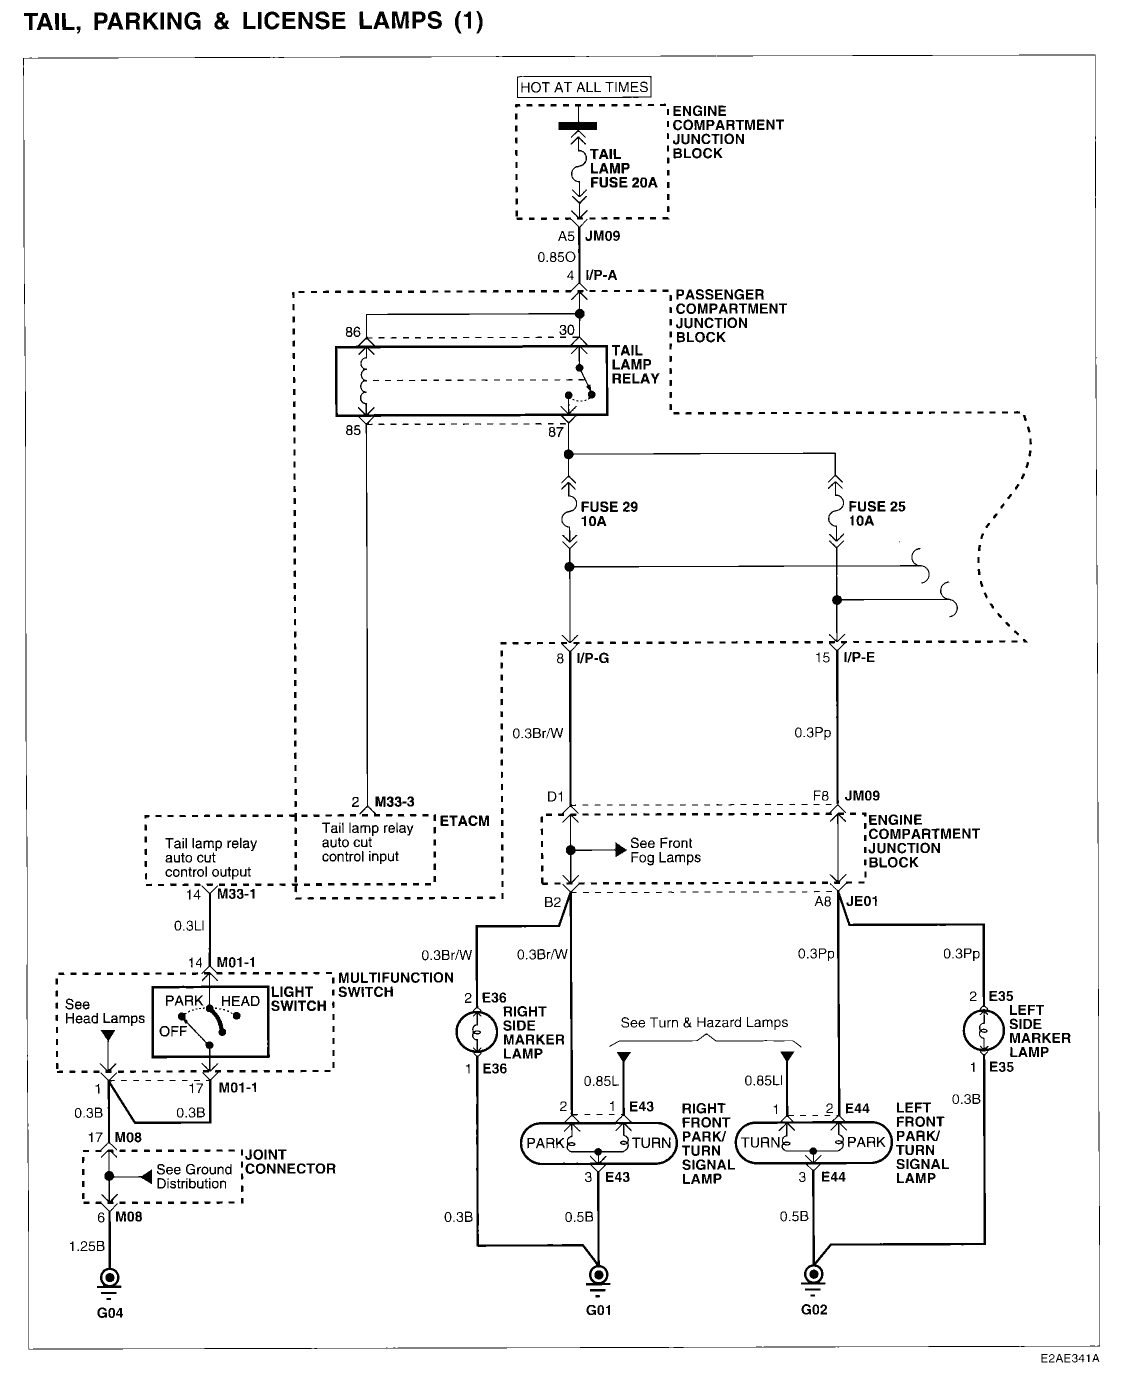 hyundai excel wiring diagram download unique hyundai sonata wiring diagram image jpg